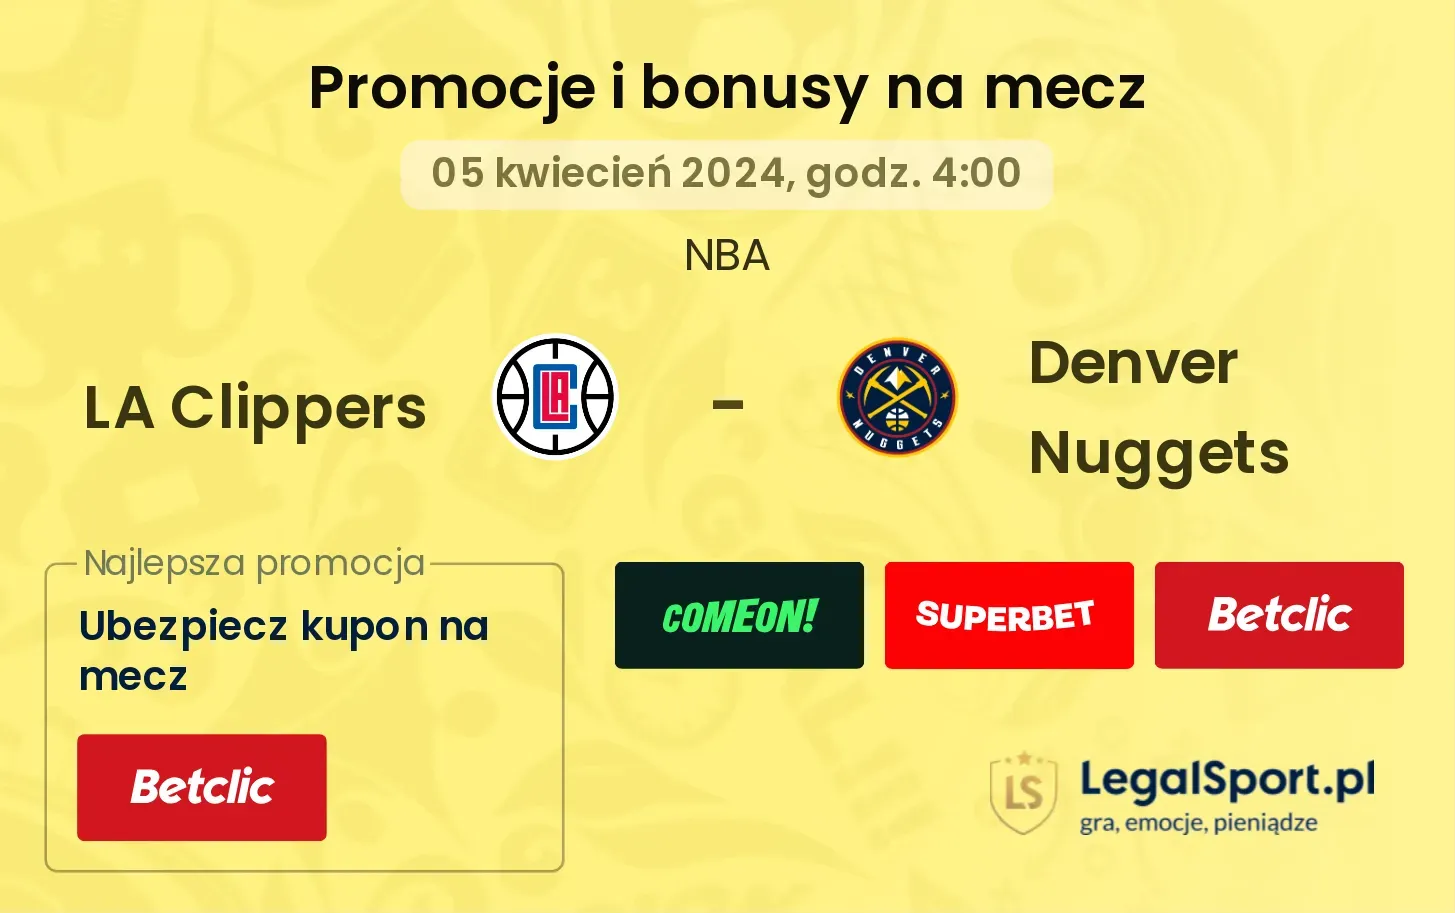 LA Clippers - Denver Nuggets promocje bonusy na mecz